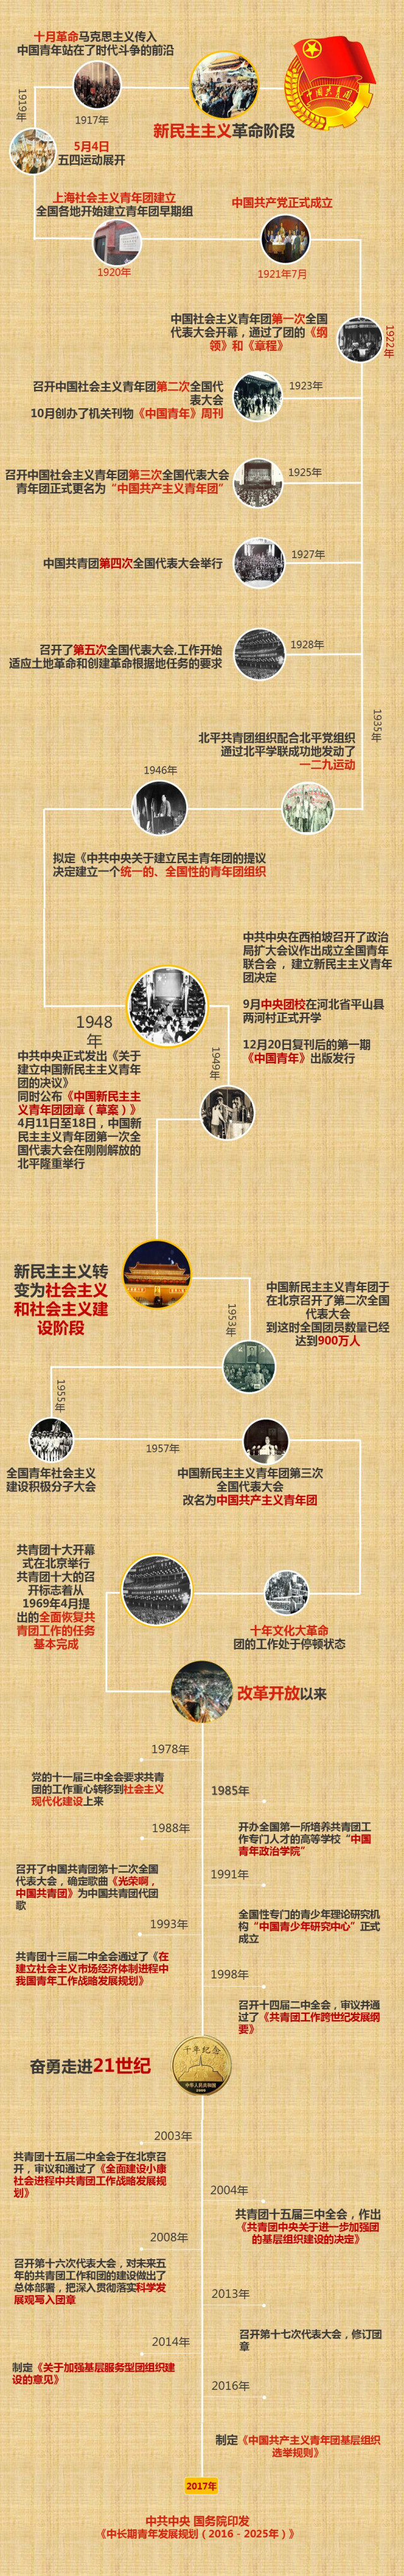 【微课堂】一张图带你看—中国共青团团史